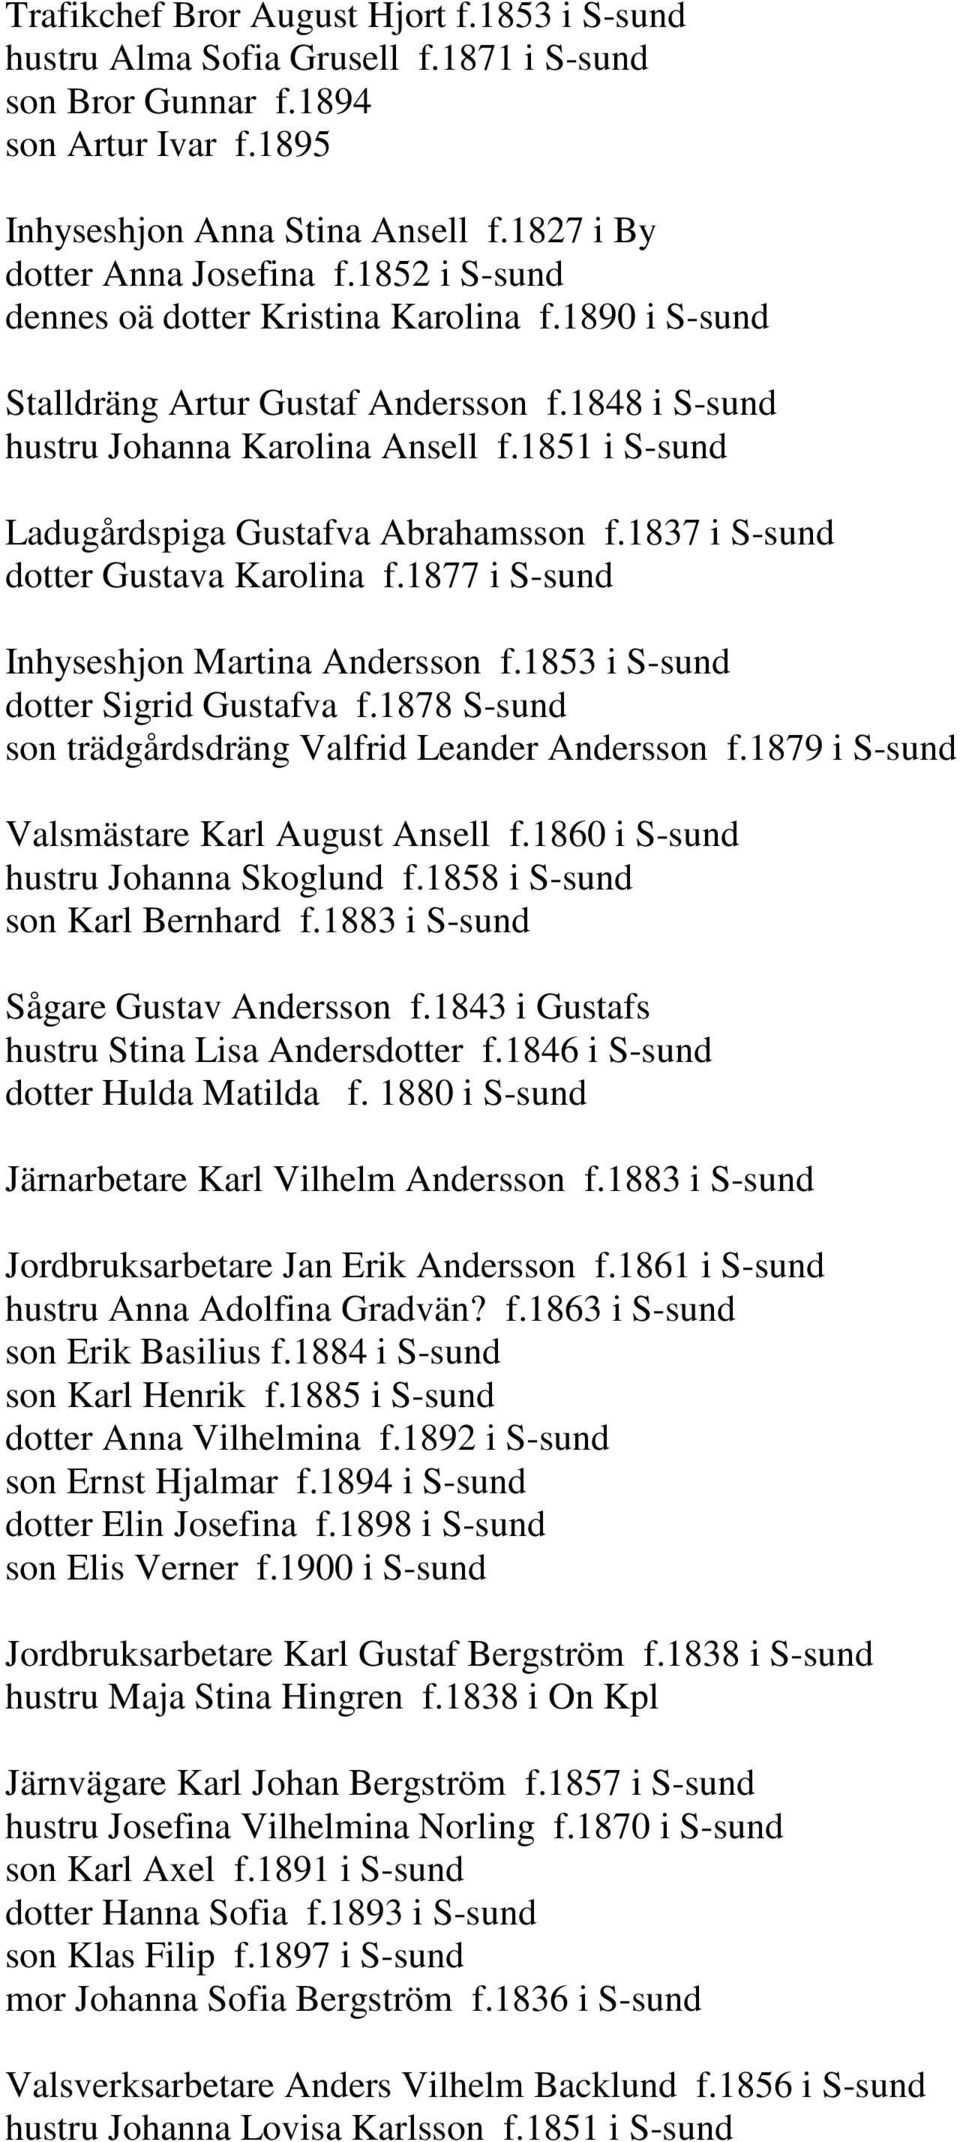 1837 i S-sund dotter Gustava Karolina f.1877 i S-sund Inhyseshjon Martina Andersson f.1853 i S-sund dotter Sigrid Gustafva f.1878 S-sund son trädgårdsdräng Valfrid Leander Andersson f.